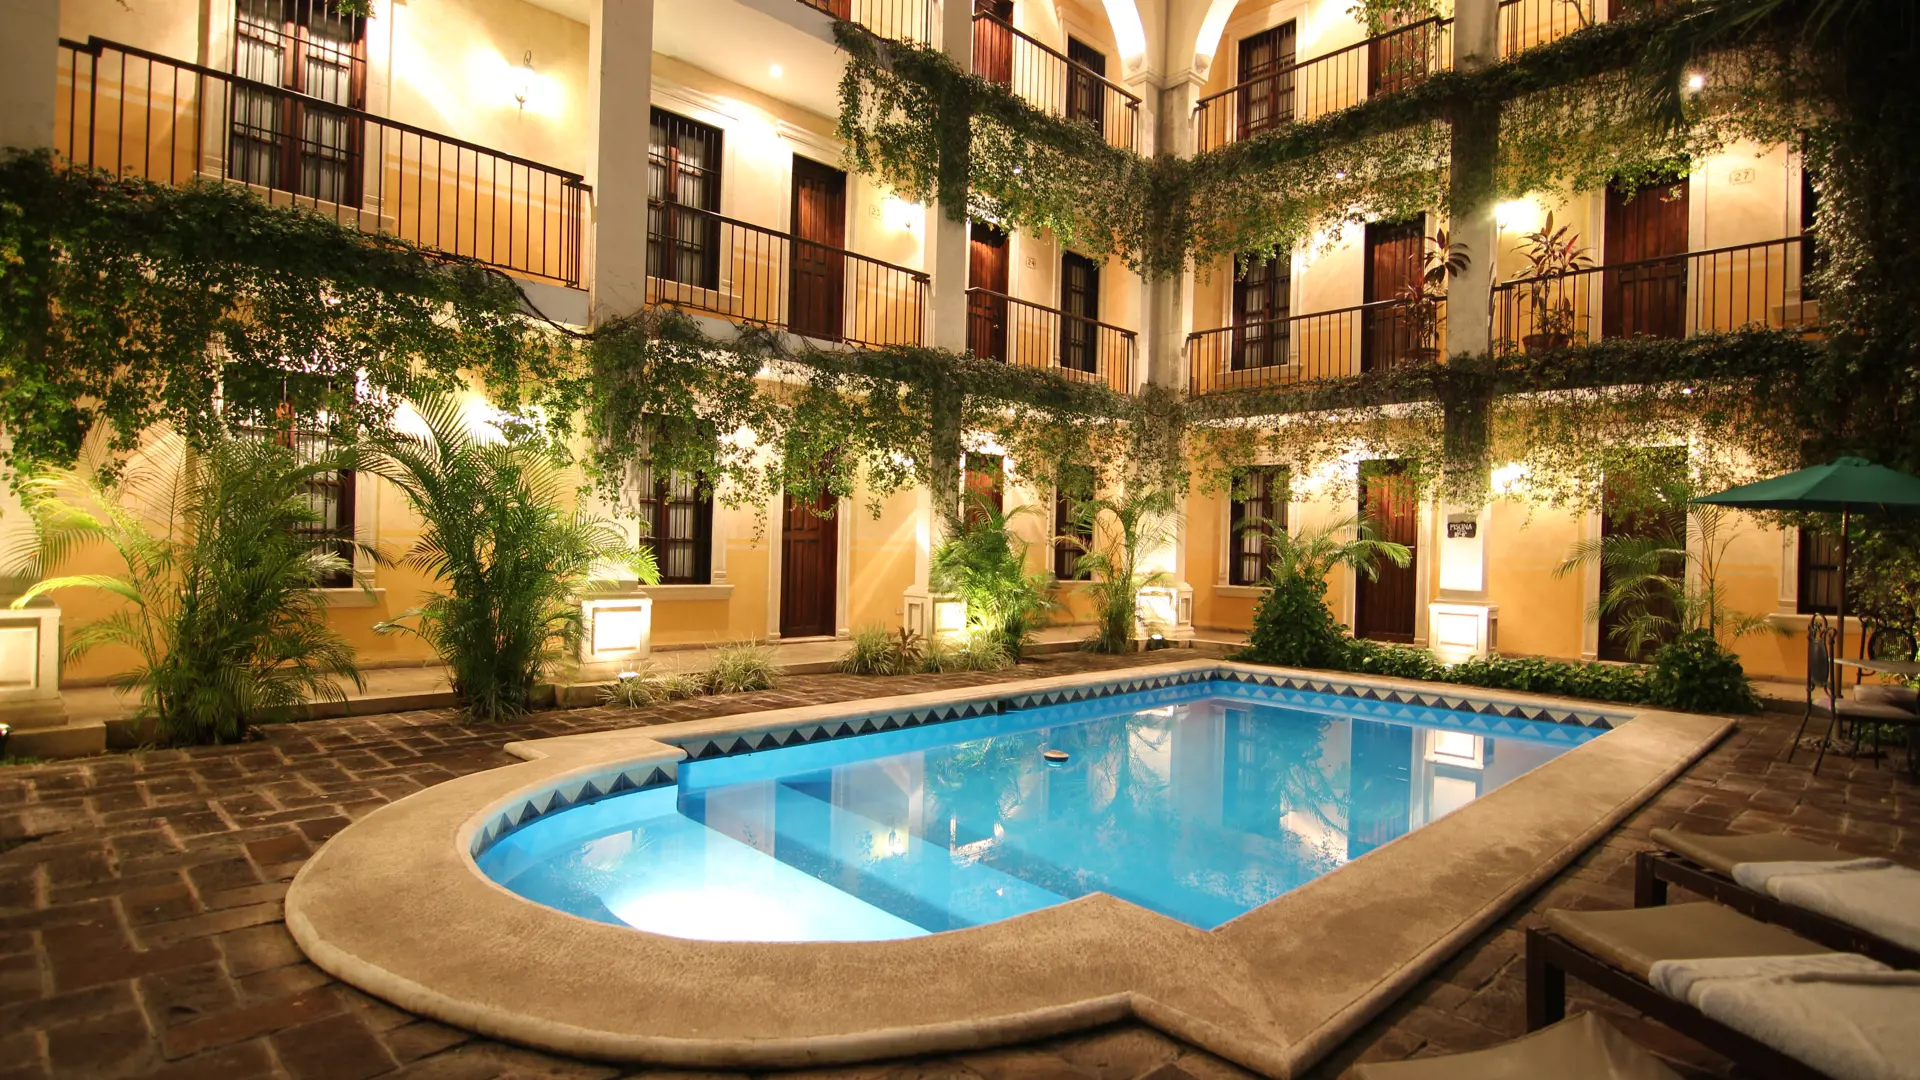 BOUTIQUE-HOTEL - I Merida har vi fundet et dejligt boutique-hotel til jer i hjertet af byen.